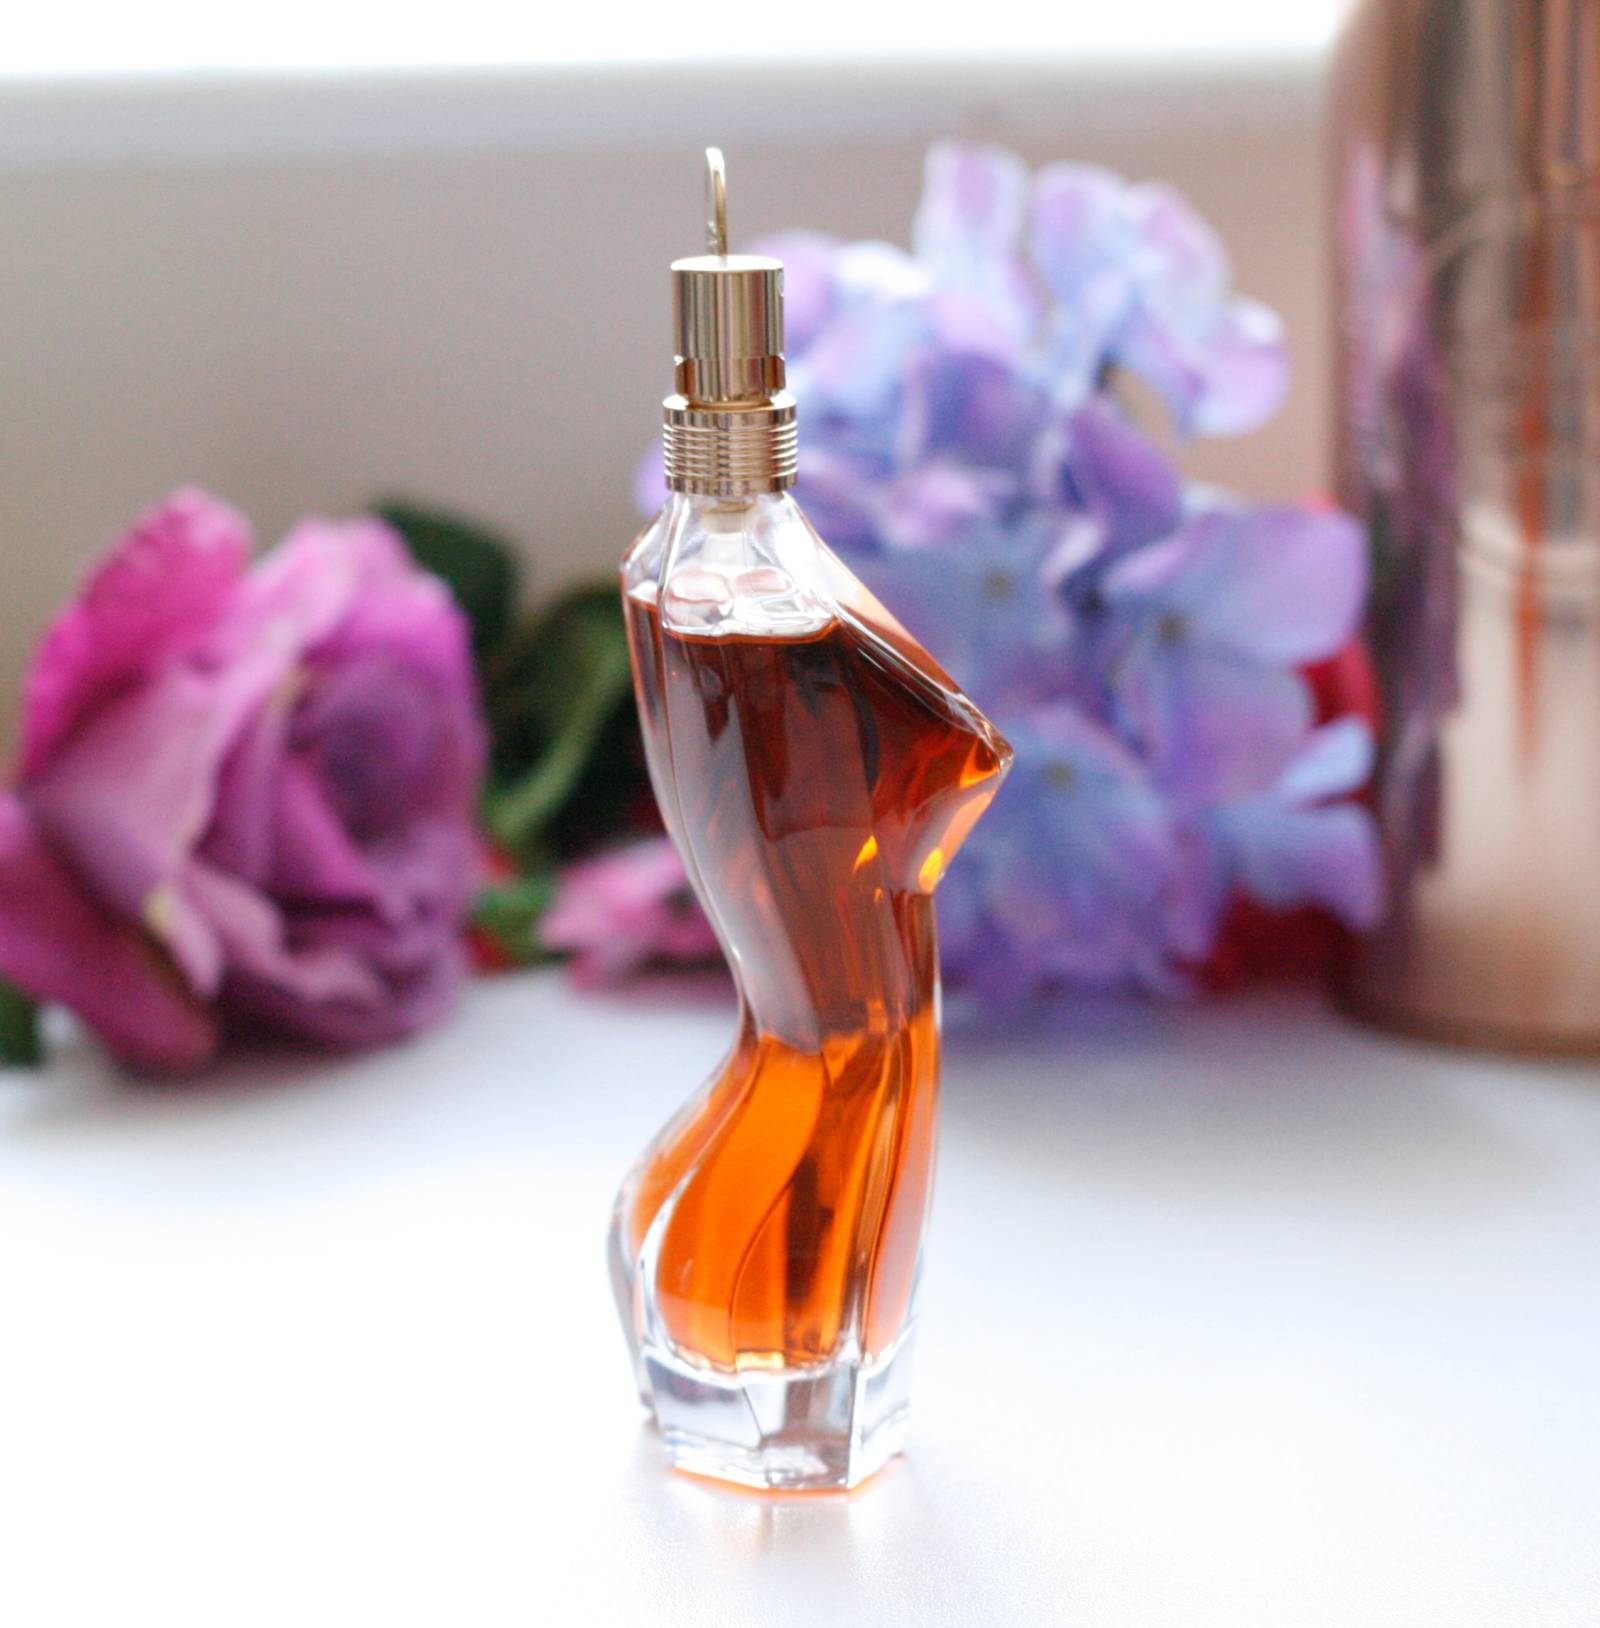 Jean Paul Gaultier Classique Essence de Parfum Review